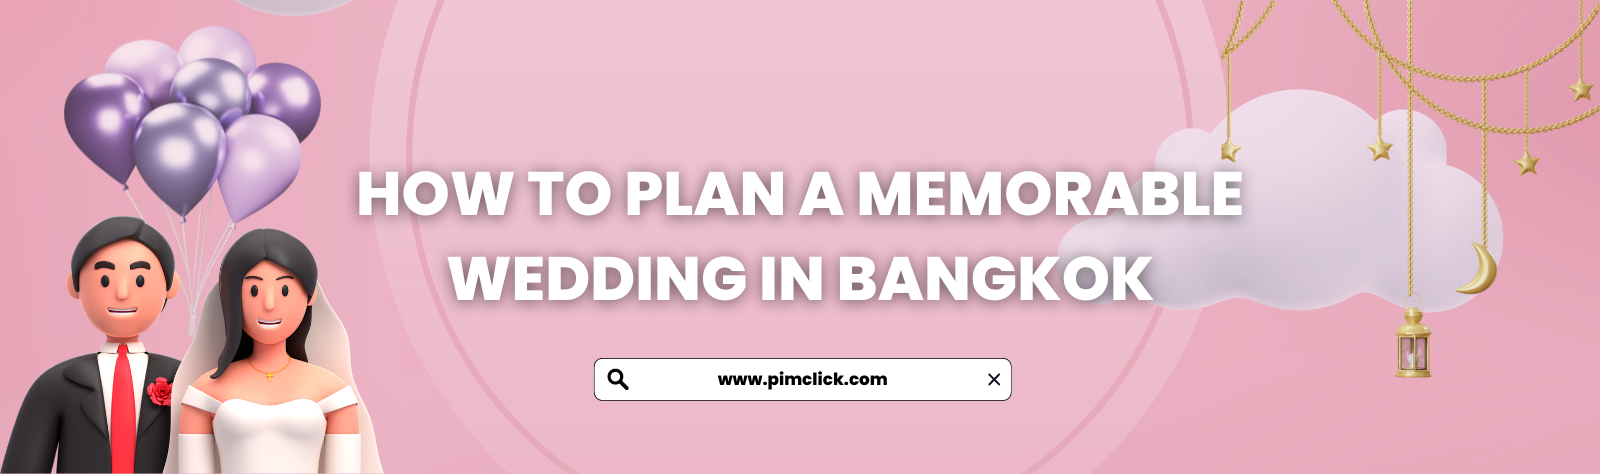 How to Plan a Memorable Wedding in Bangkok